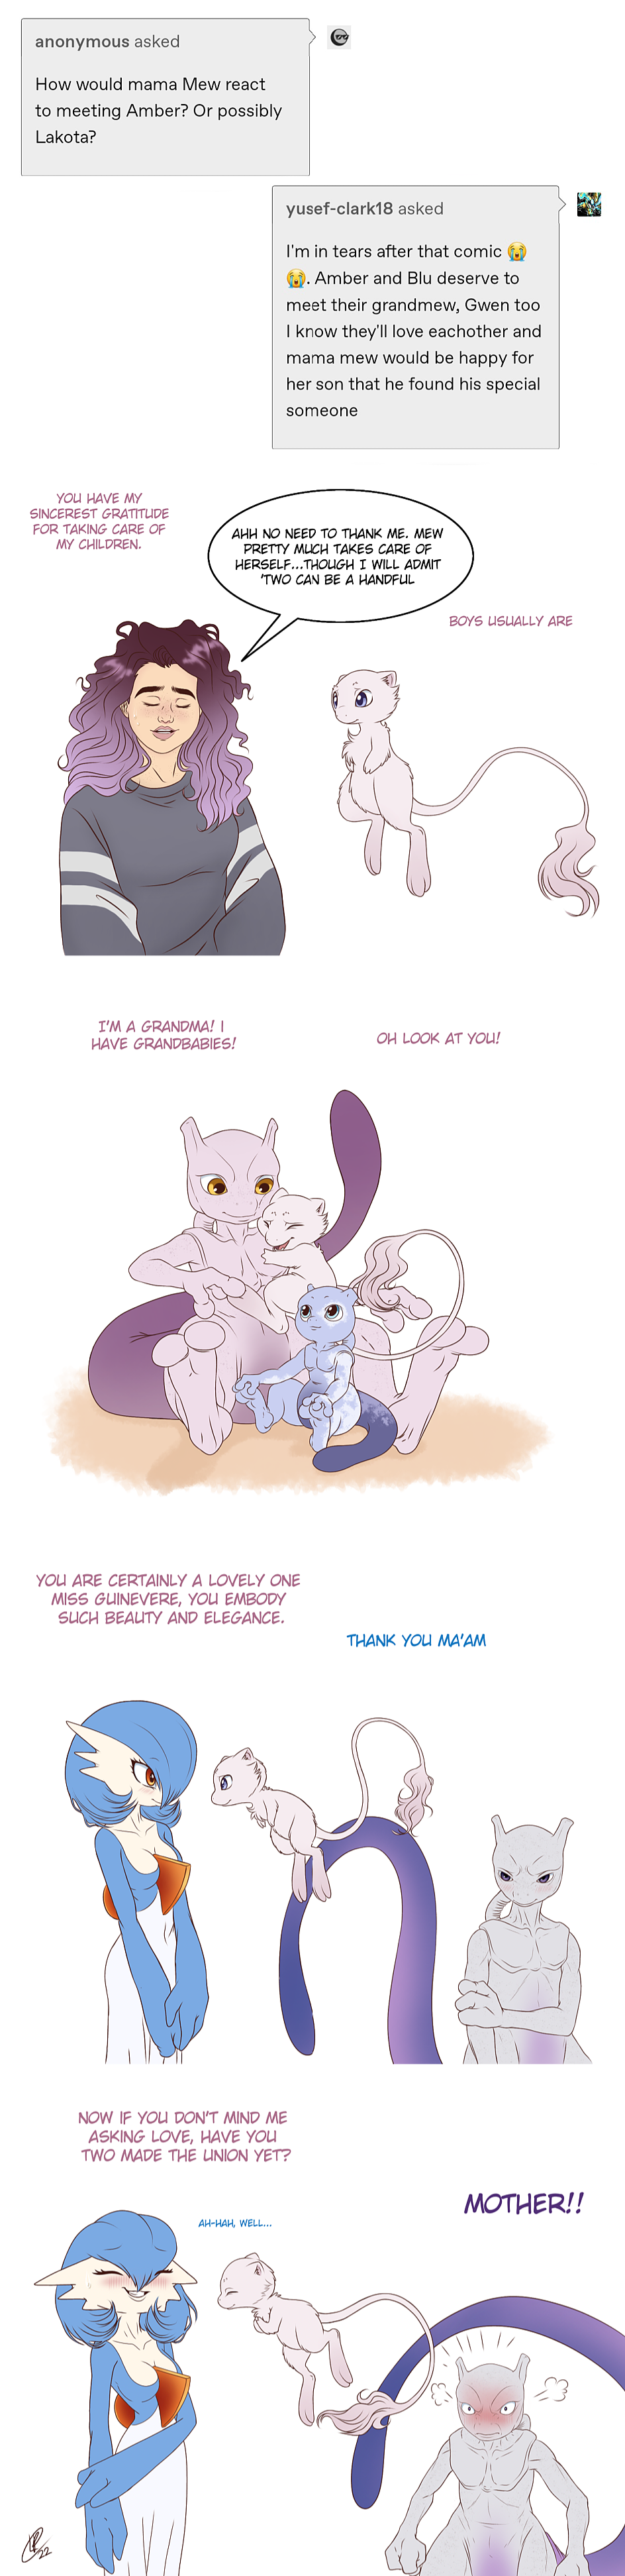 Mew - Pokemon Unite by Rubychu96 on DeviantArt